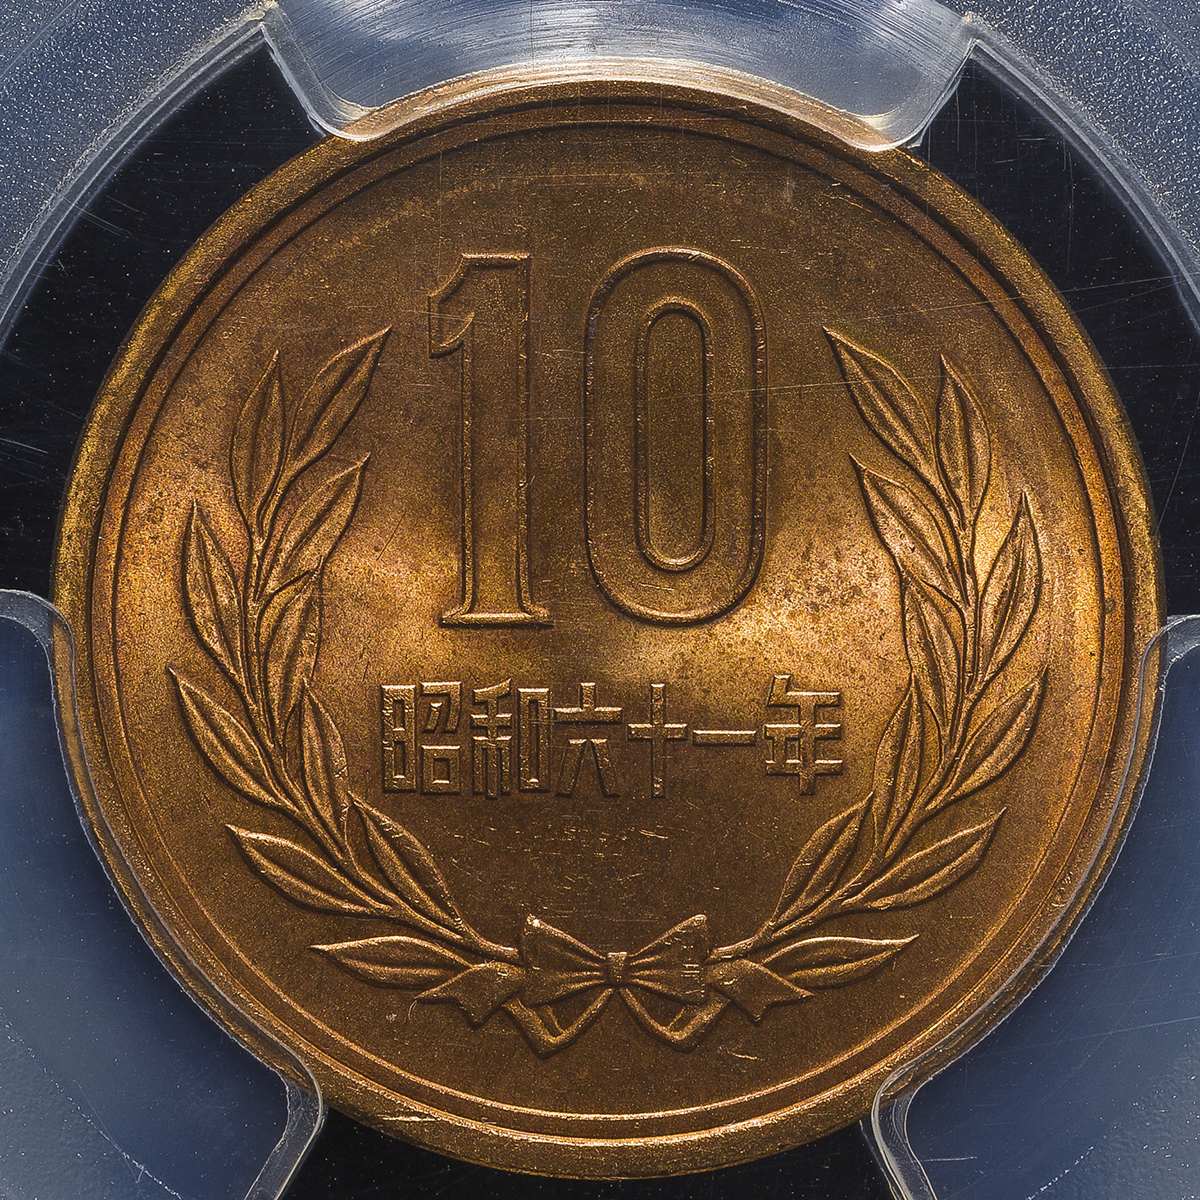 貨幣博物館 日本 十円青銅貨 ギザなし 10yen Plain Edge 昭和61年 1986 Unc Fdc